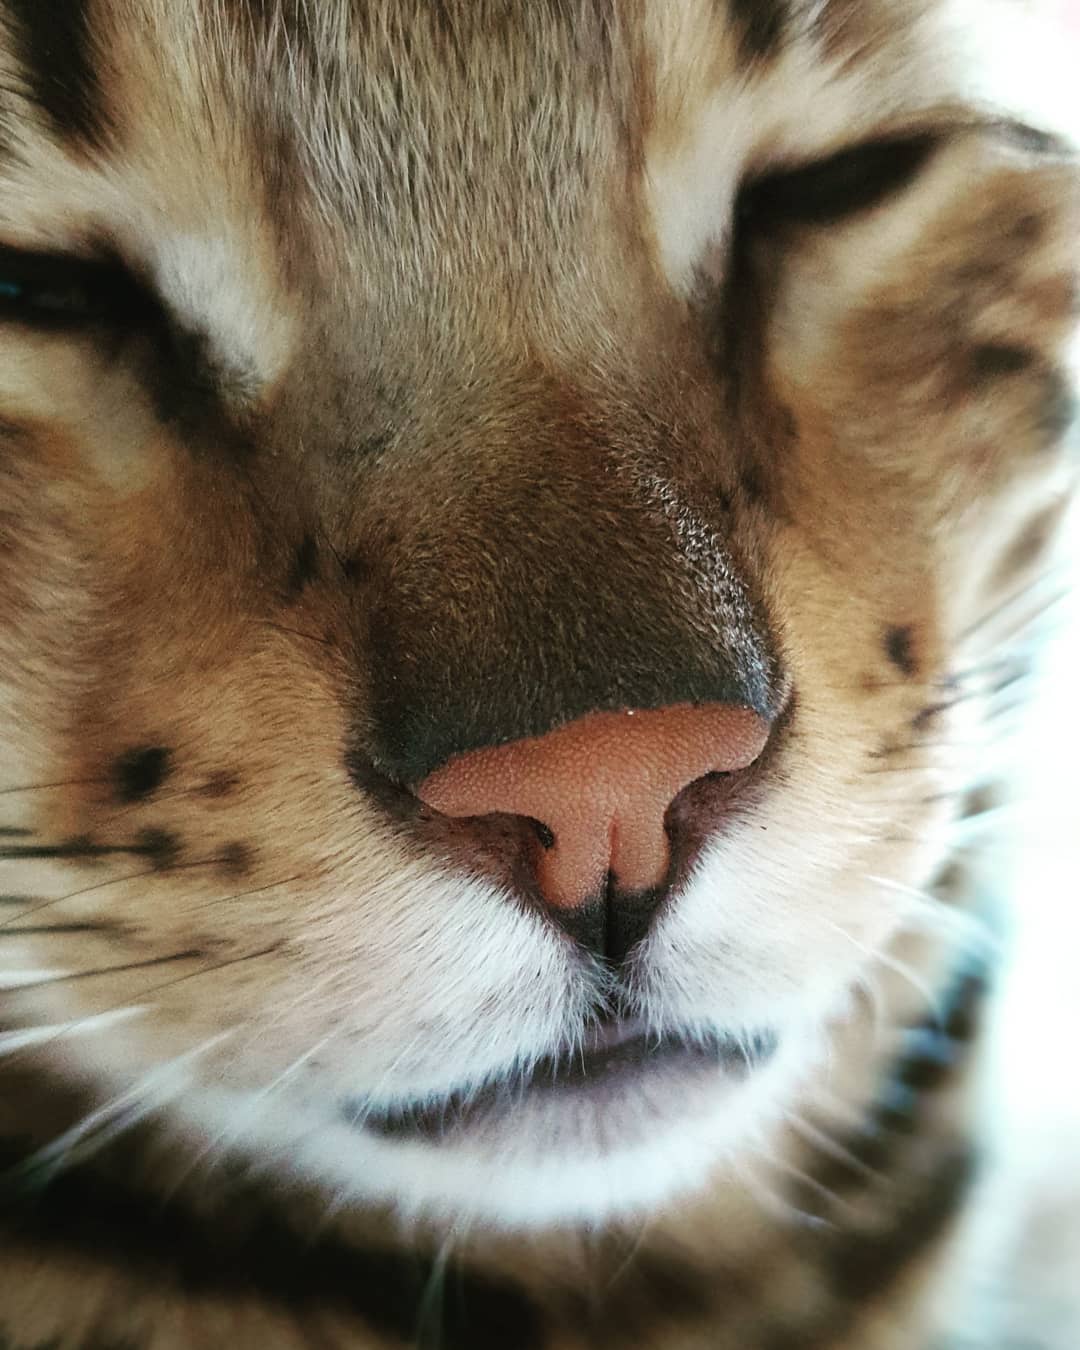 close up adorable sleeping face of a Bengal Cat